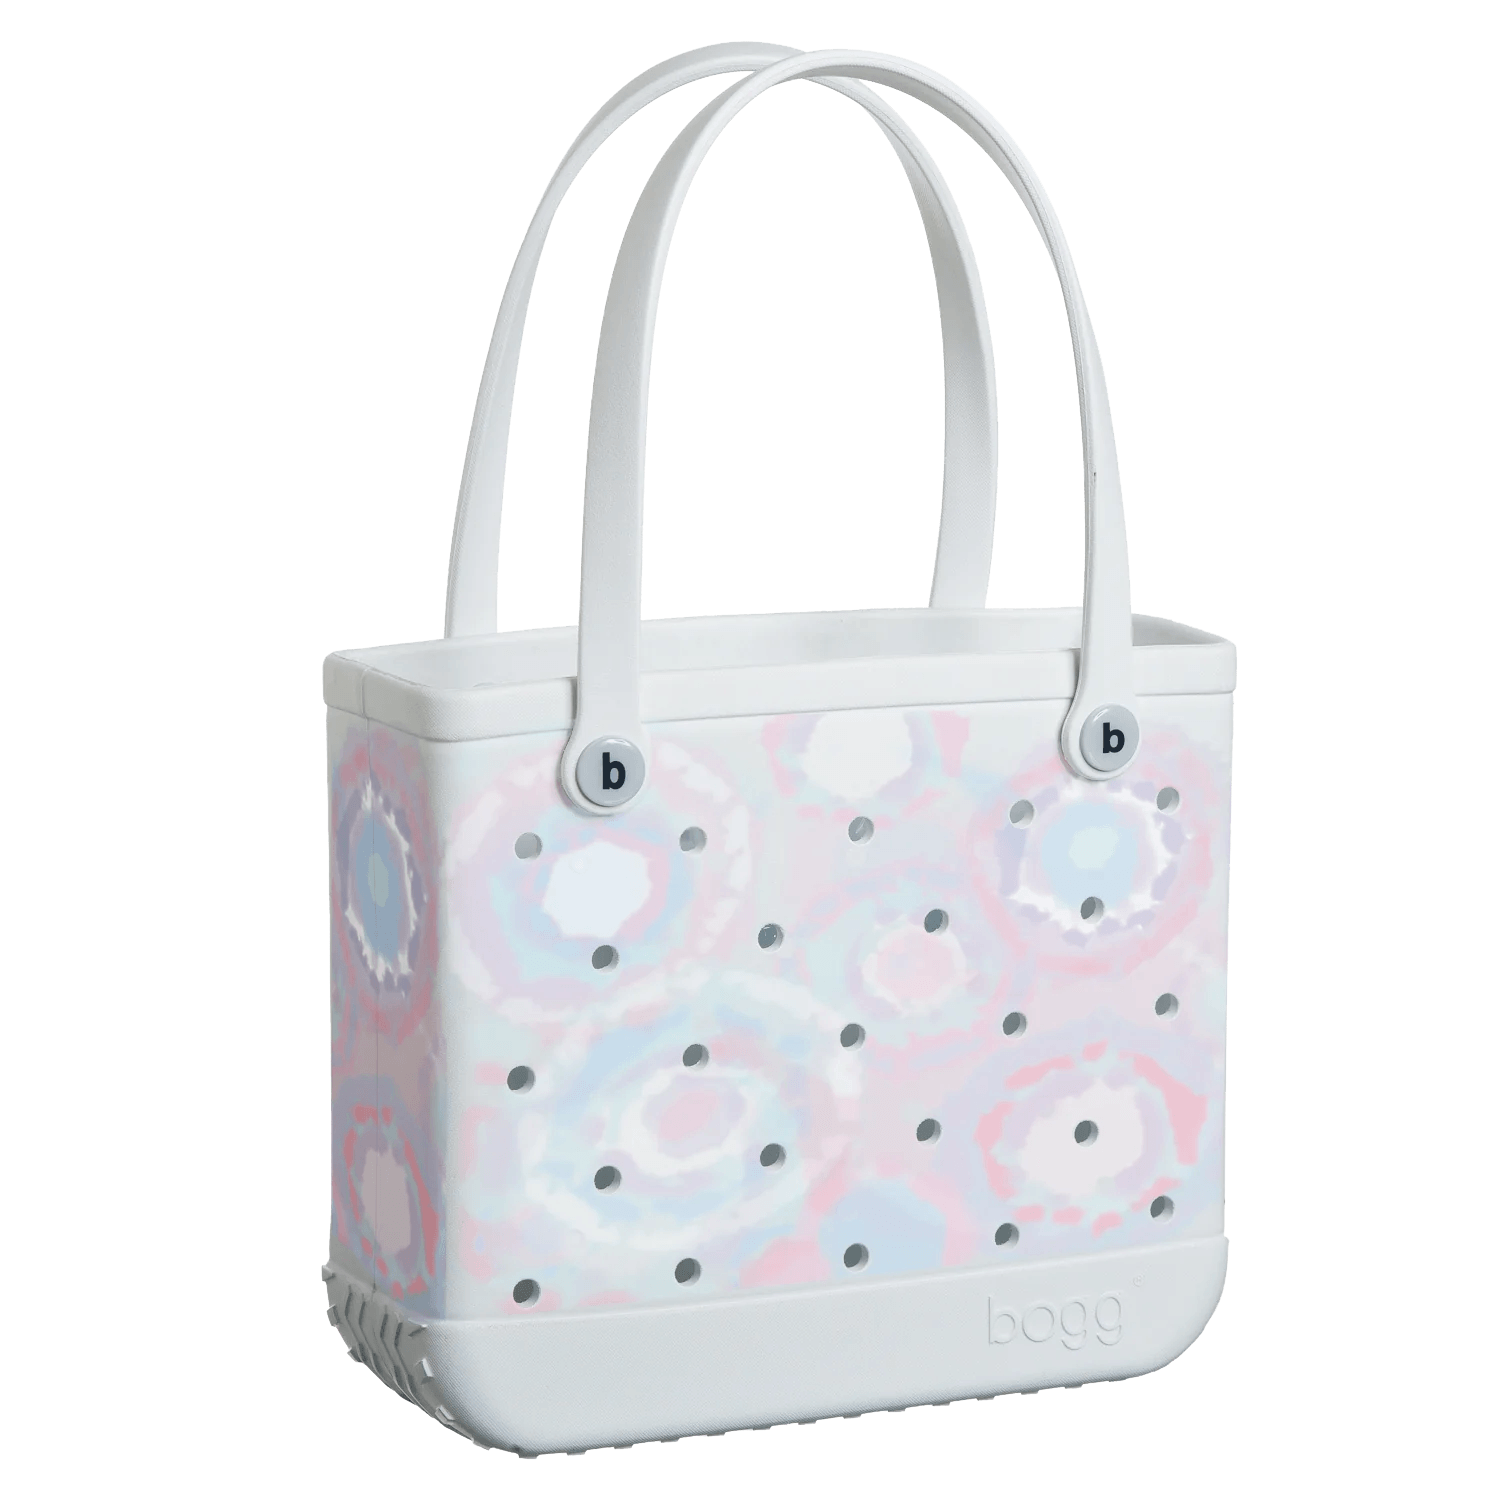 Bogg Bag Tote Bag, Small - ANB Baby -$100 - $300